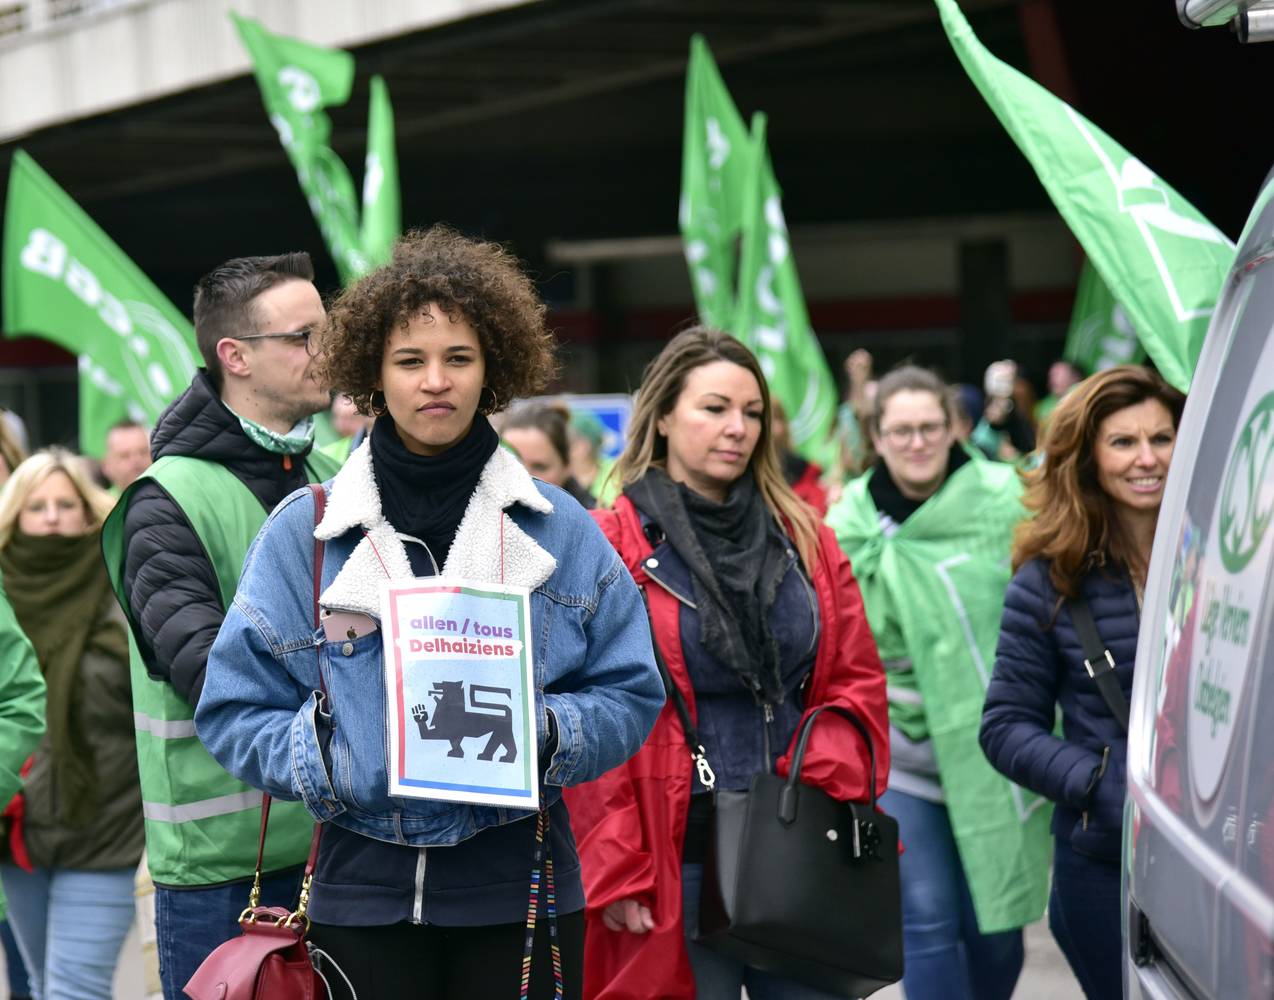 Plusieurs personnes se tienne debout devant un Delhaize. Elles portent des chasubles et des drapeaux syndicaux verts et rouges. À l'avant-planc, une jeune femme brune vêtue d'une veste en jeans porte autour du coup l'affiche "Tous Delhaiziens" du PTB. 